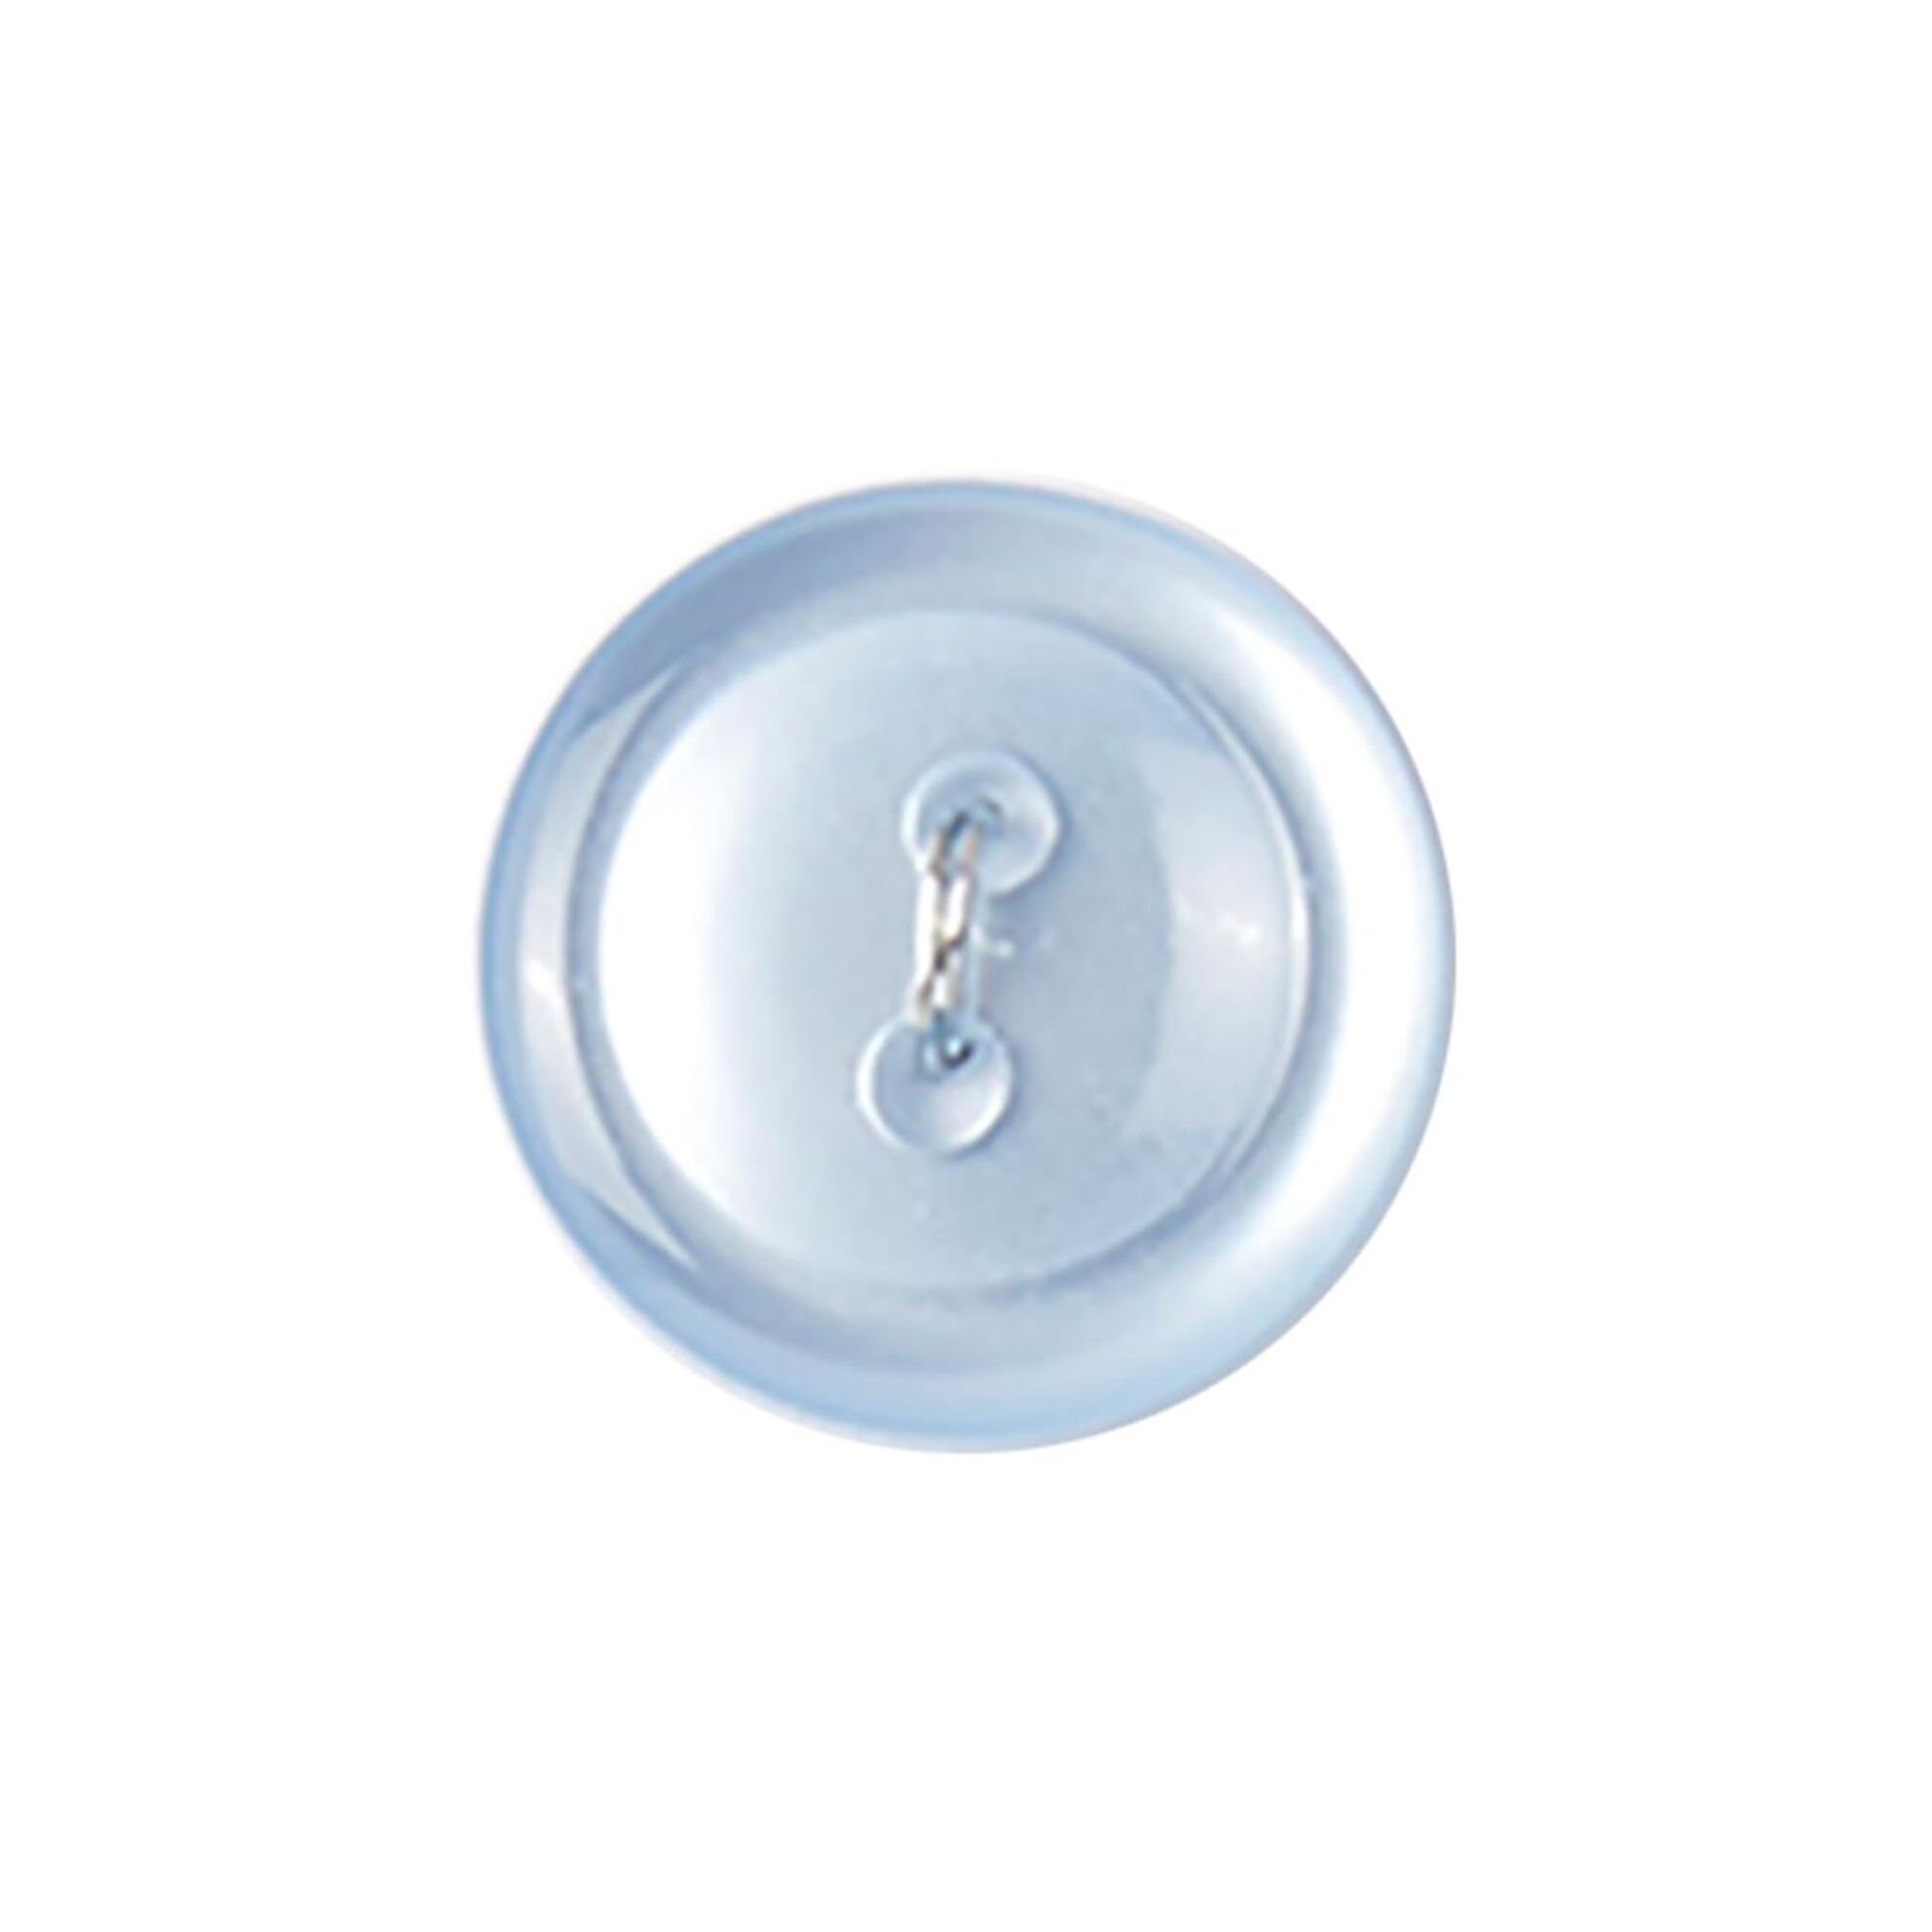 Set 7 Light Blue Buttons 2-Hole Flat Concave Rim 5/8 Diameter Vintage